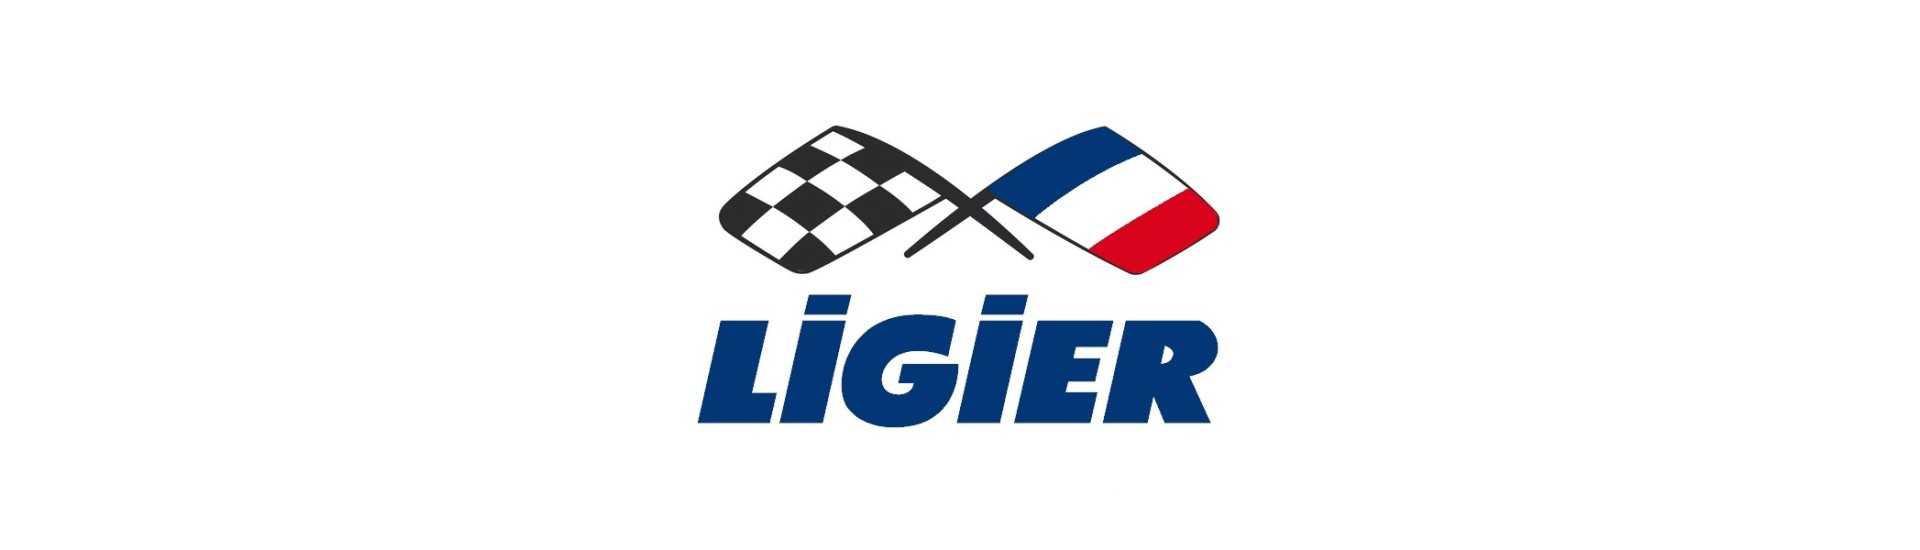 Cable de calefacción al mejor precio para coche sin permiso Ligier